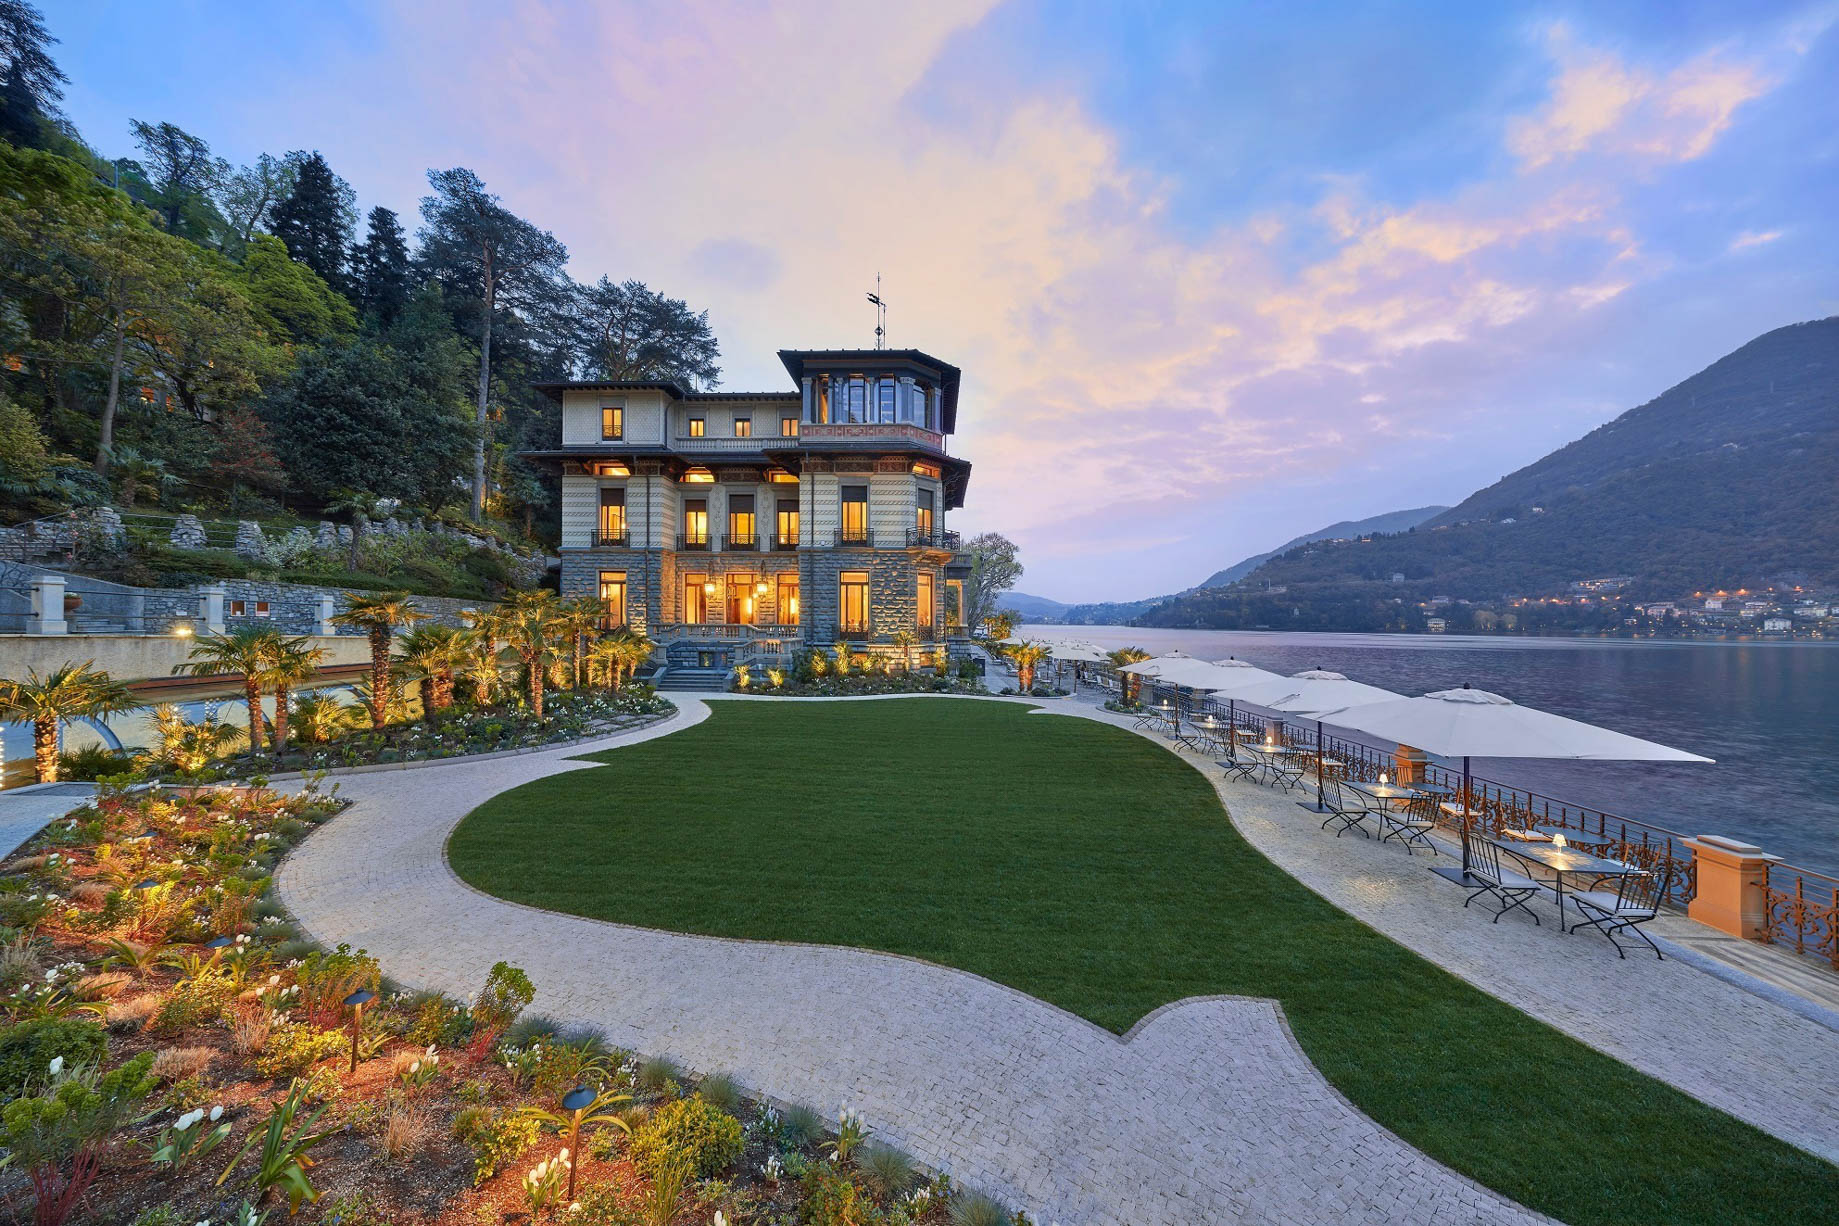 Mandarin Oriental, Lago di Como Hotel - Lake Como, Italy - Exterior Lawn Como Lake View Sunset